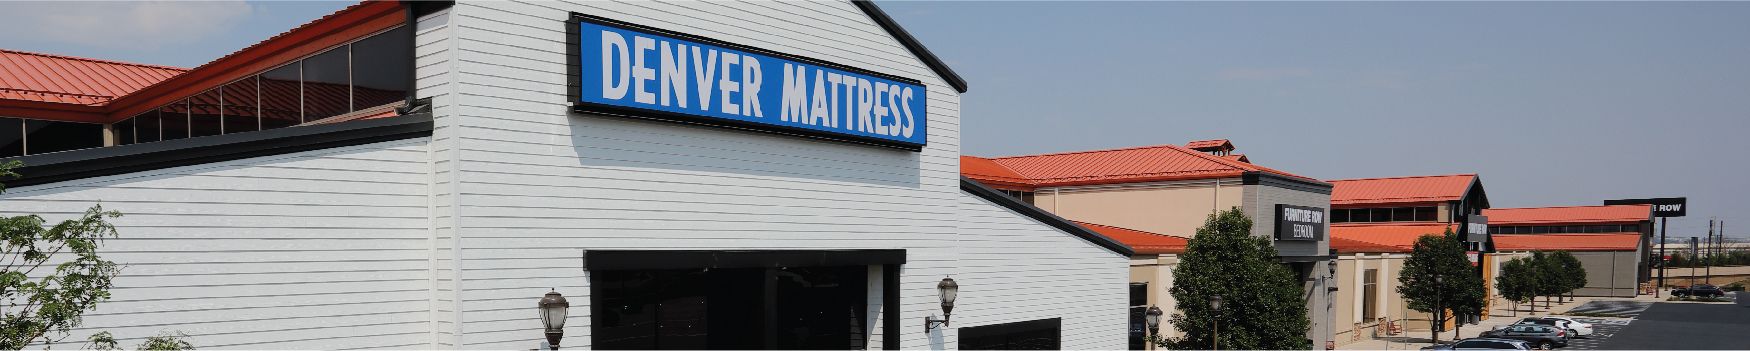 Denver Mattress Flagship Store